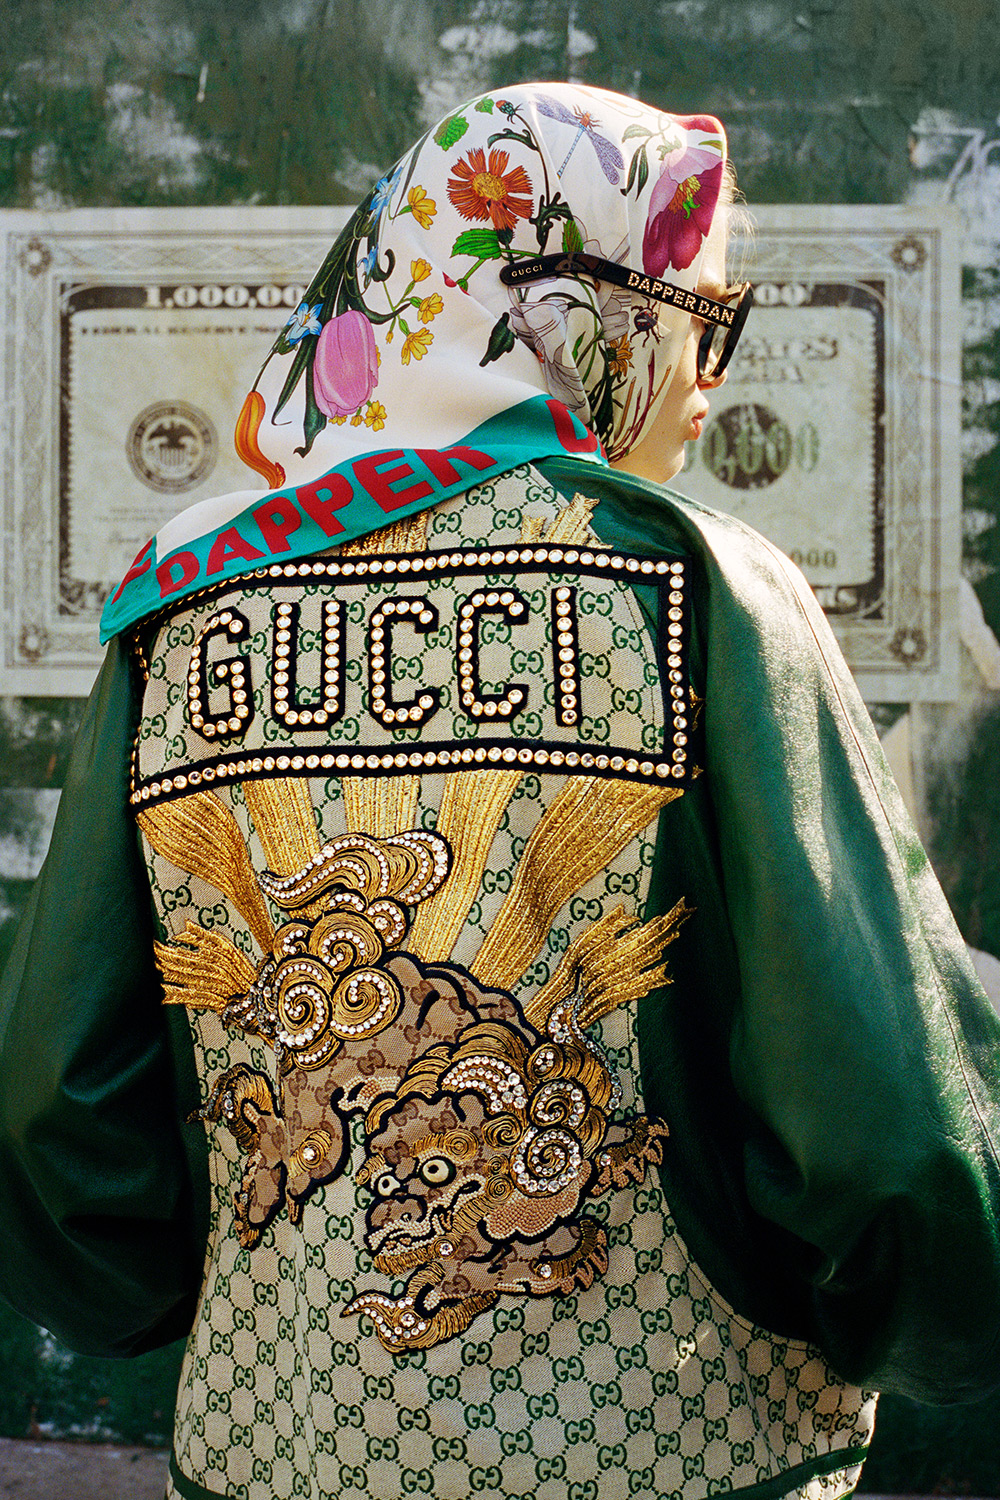 Gucci Has Finally Dropped The Dapper Dan Collab